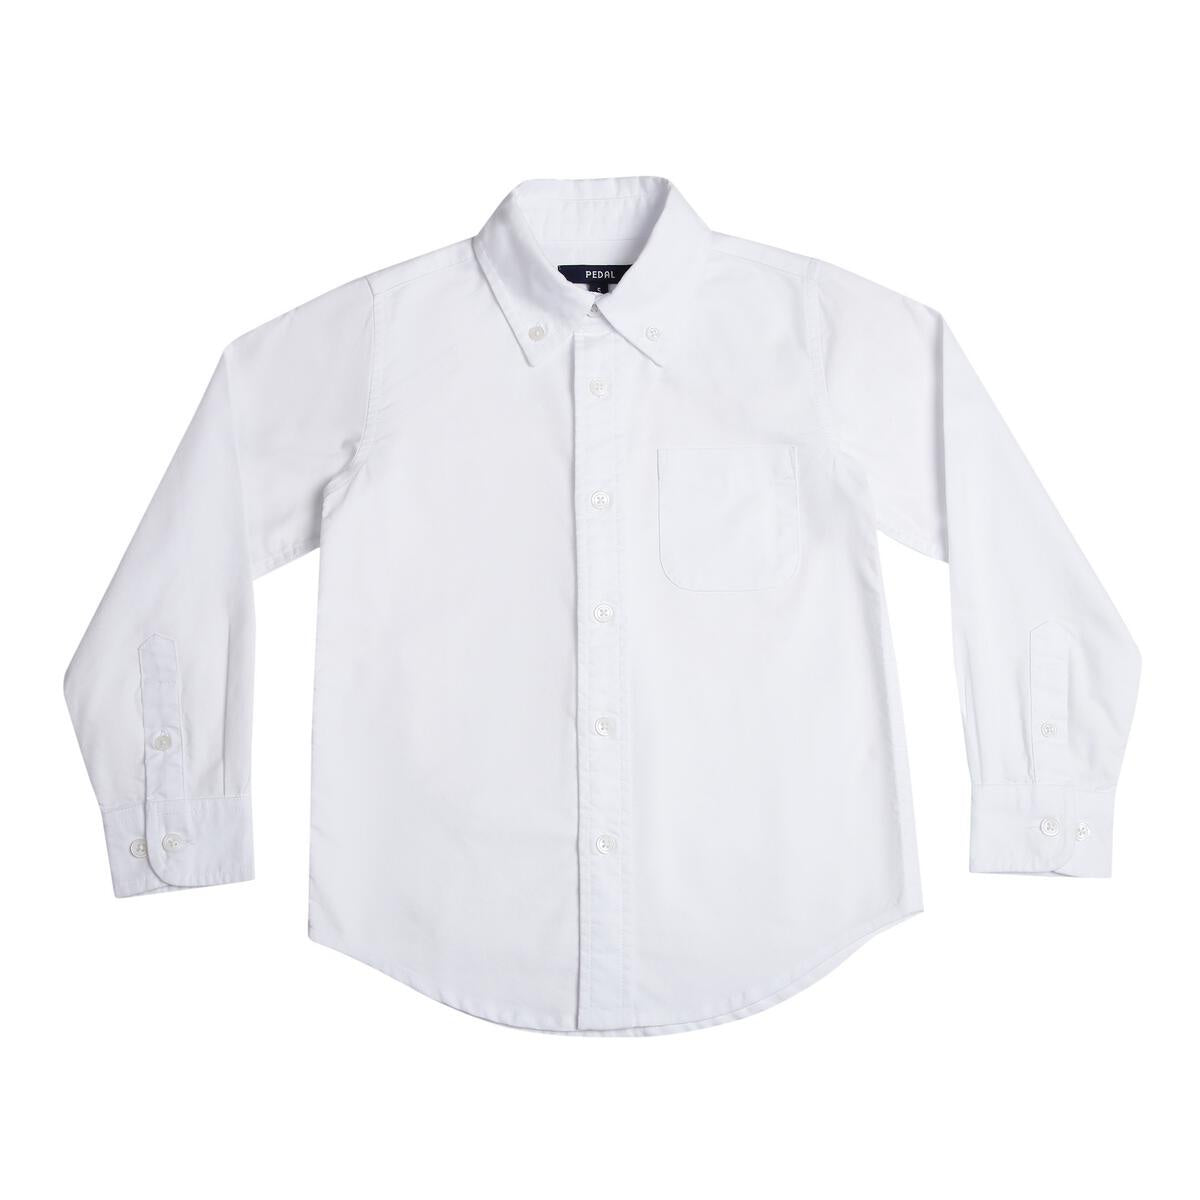 Pedal White Oxford Shirt 31151 5008